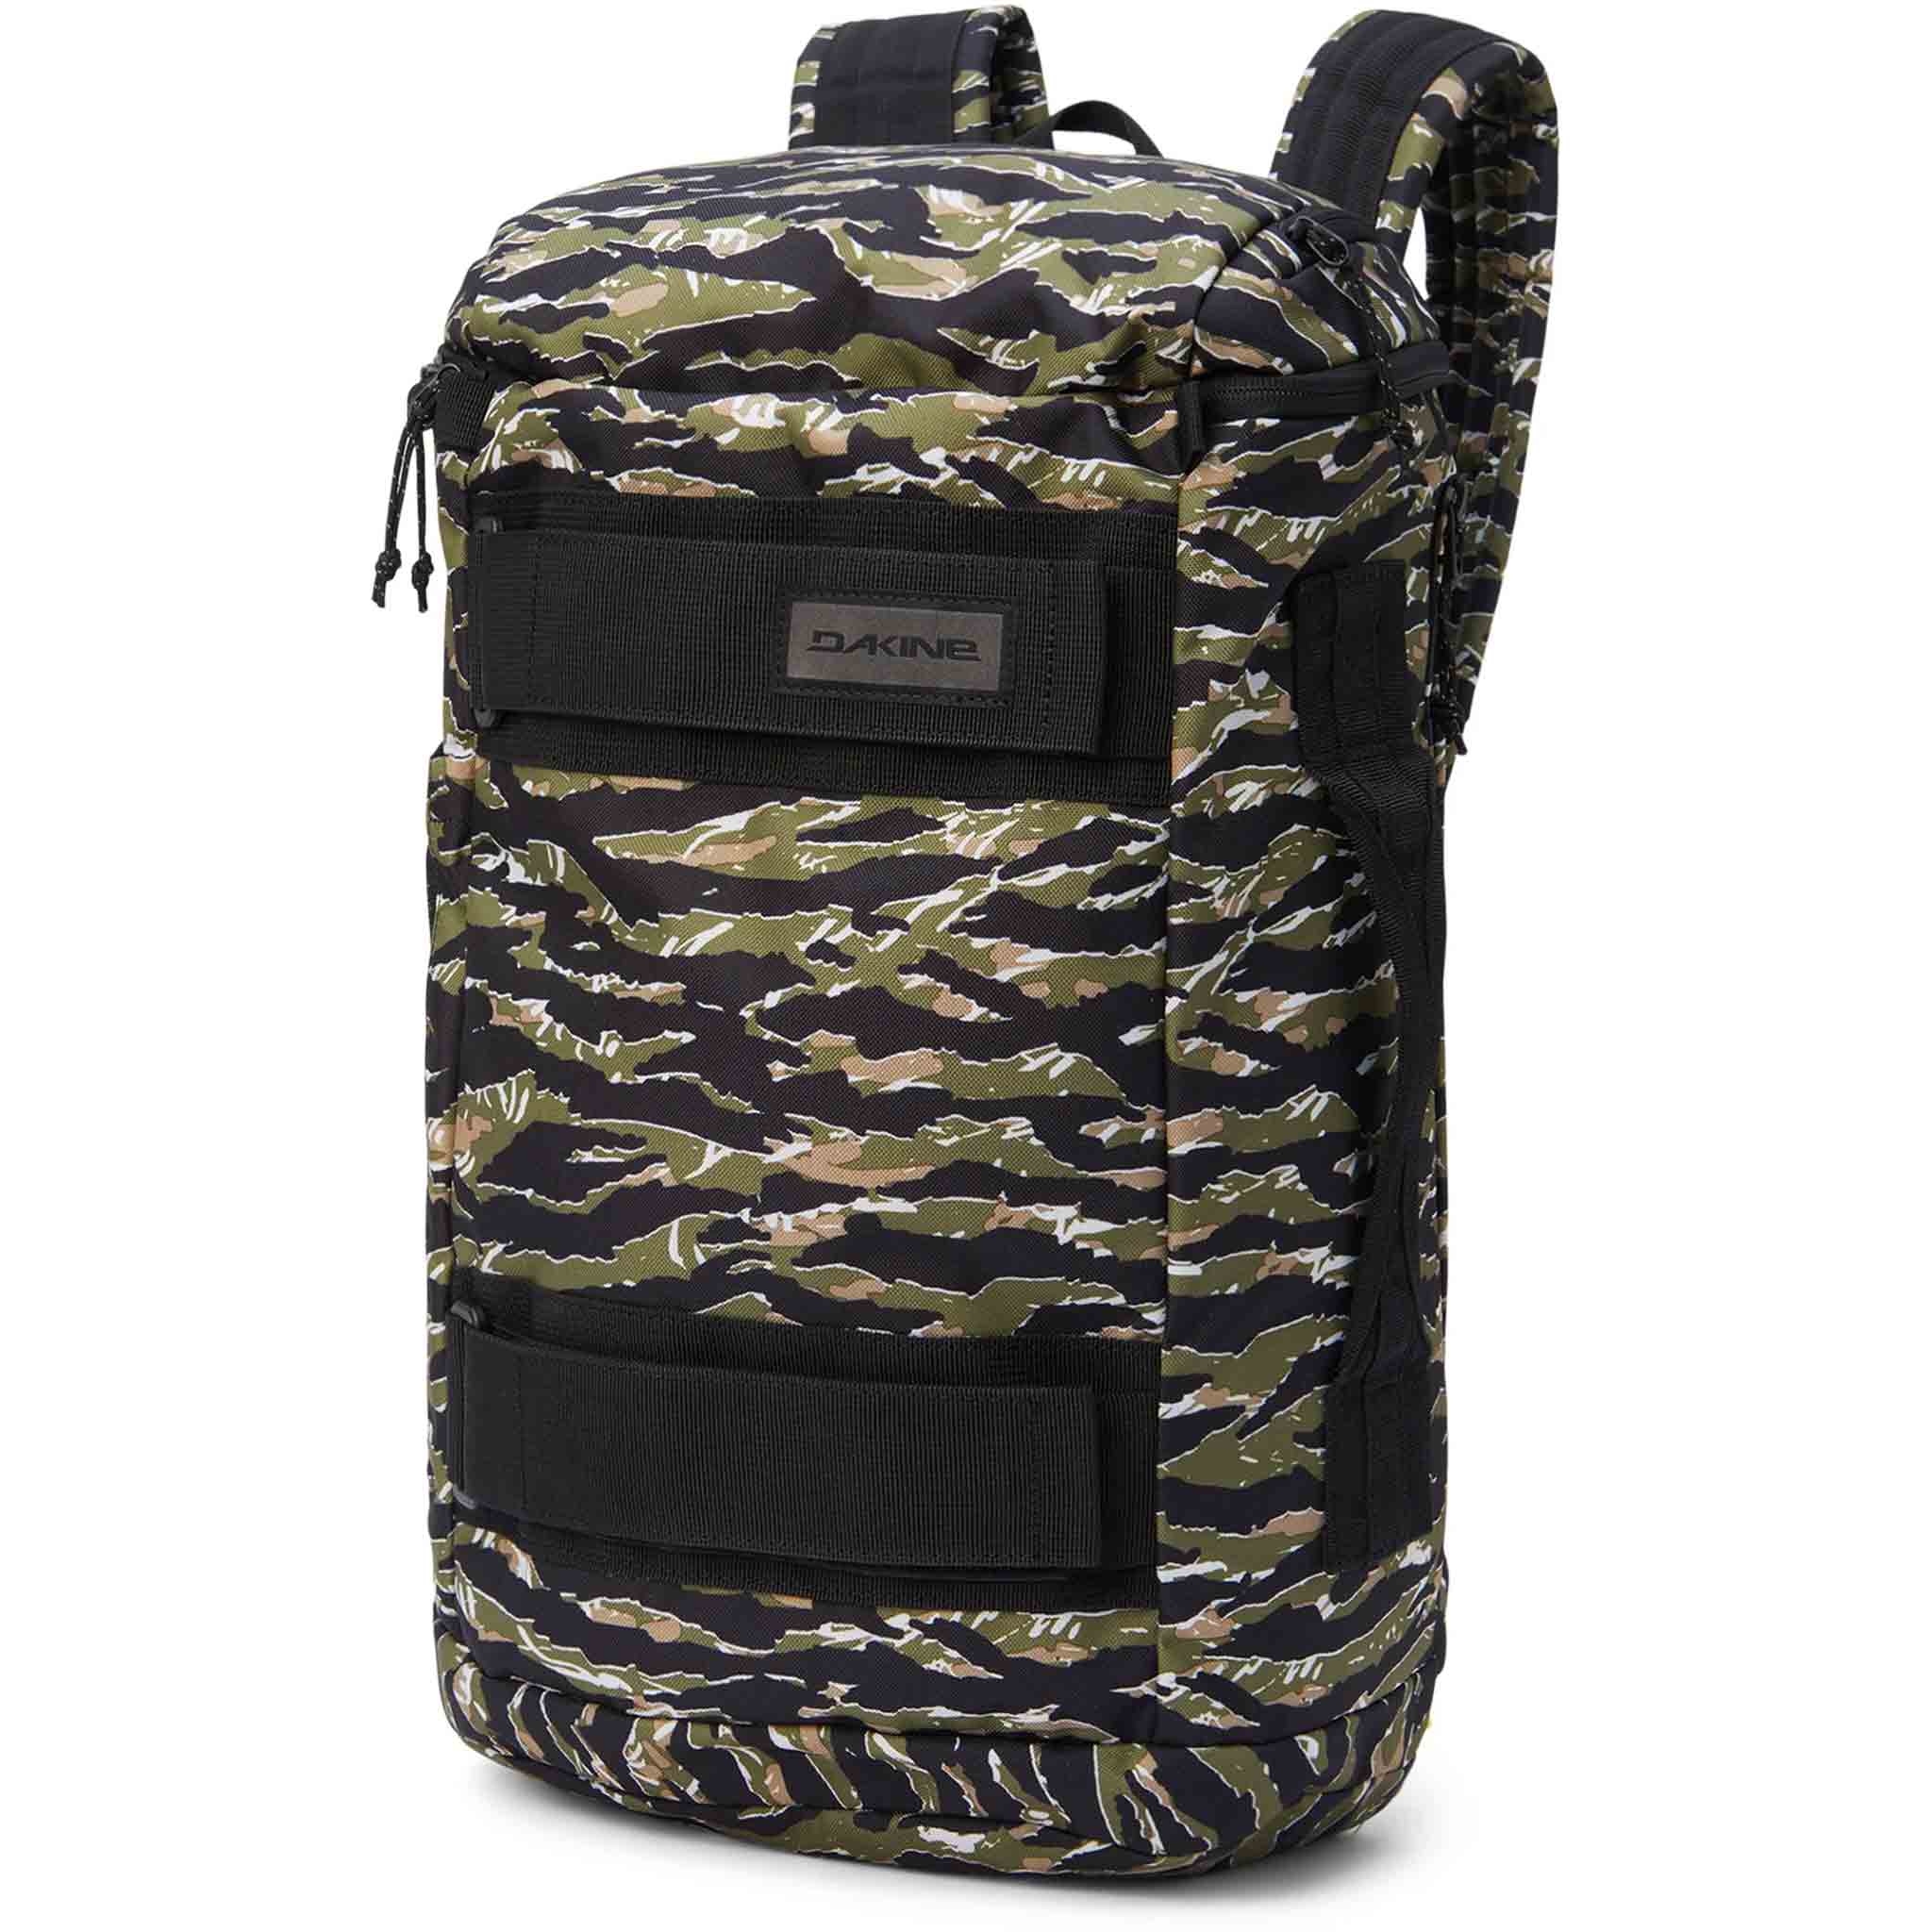 Dakine Mission Street Backpack 25L Tiger Camo Backpack